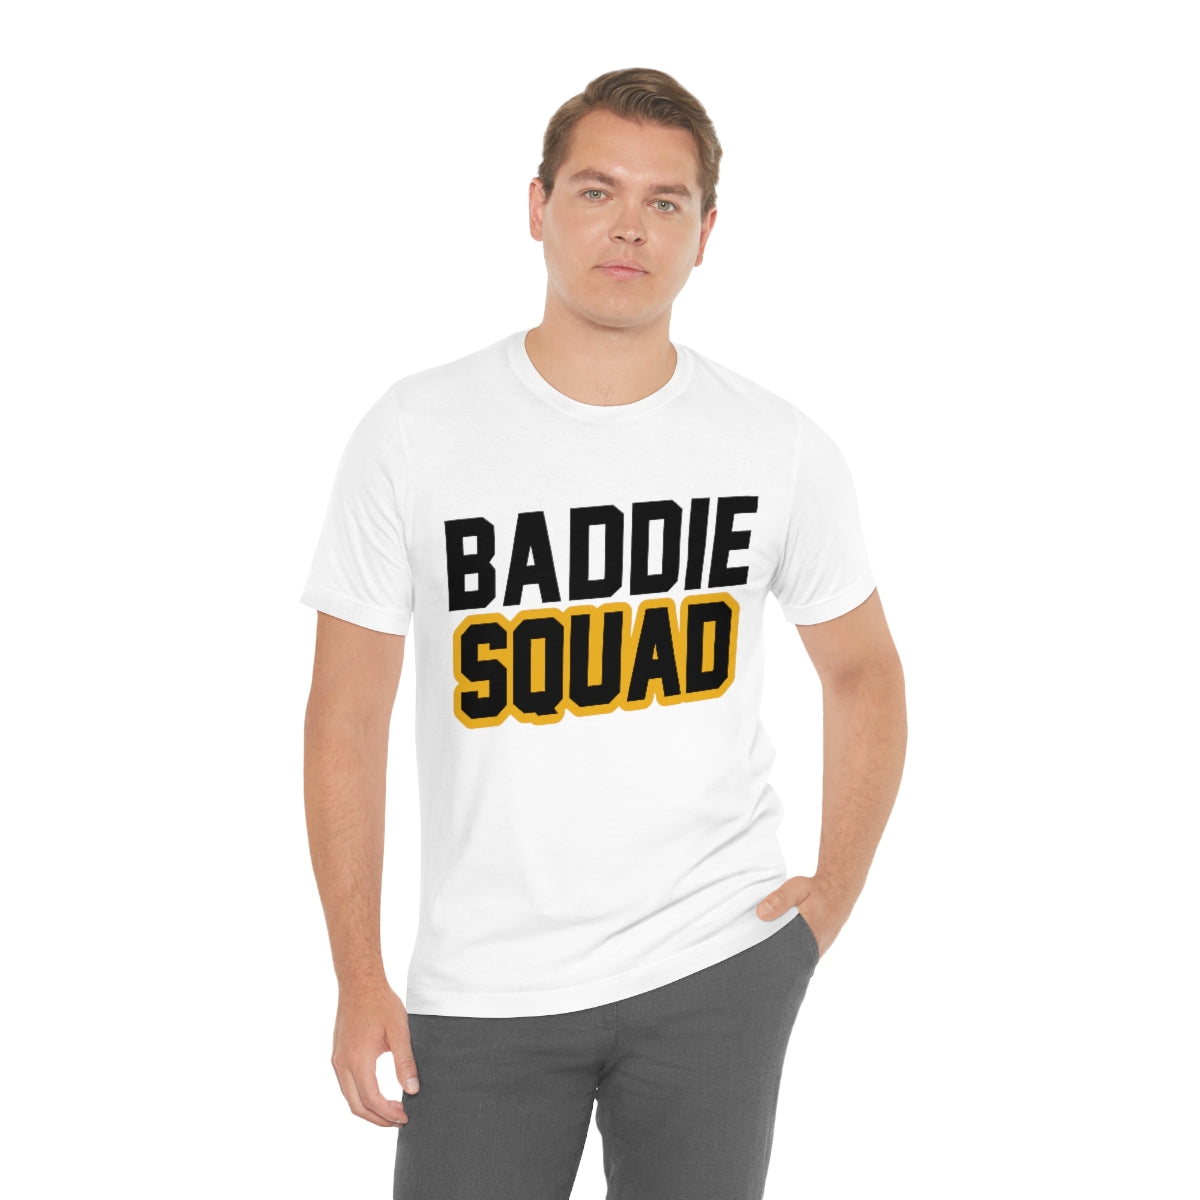 Affirmation Feminist Pro Choice T-Shirt Unisex Size - Baddie Squad Printify